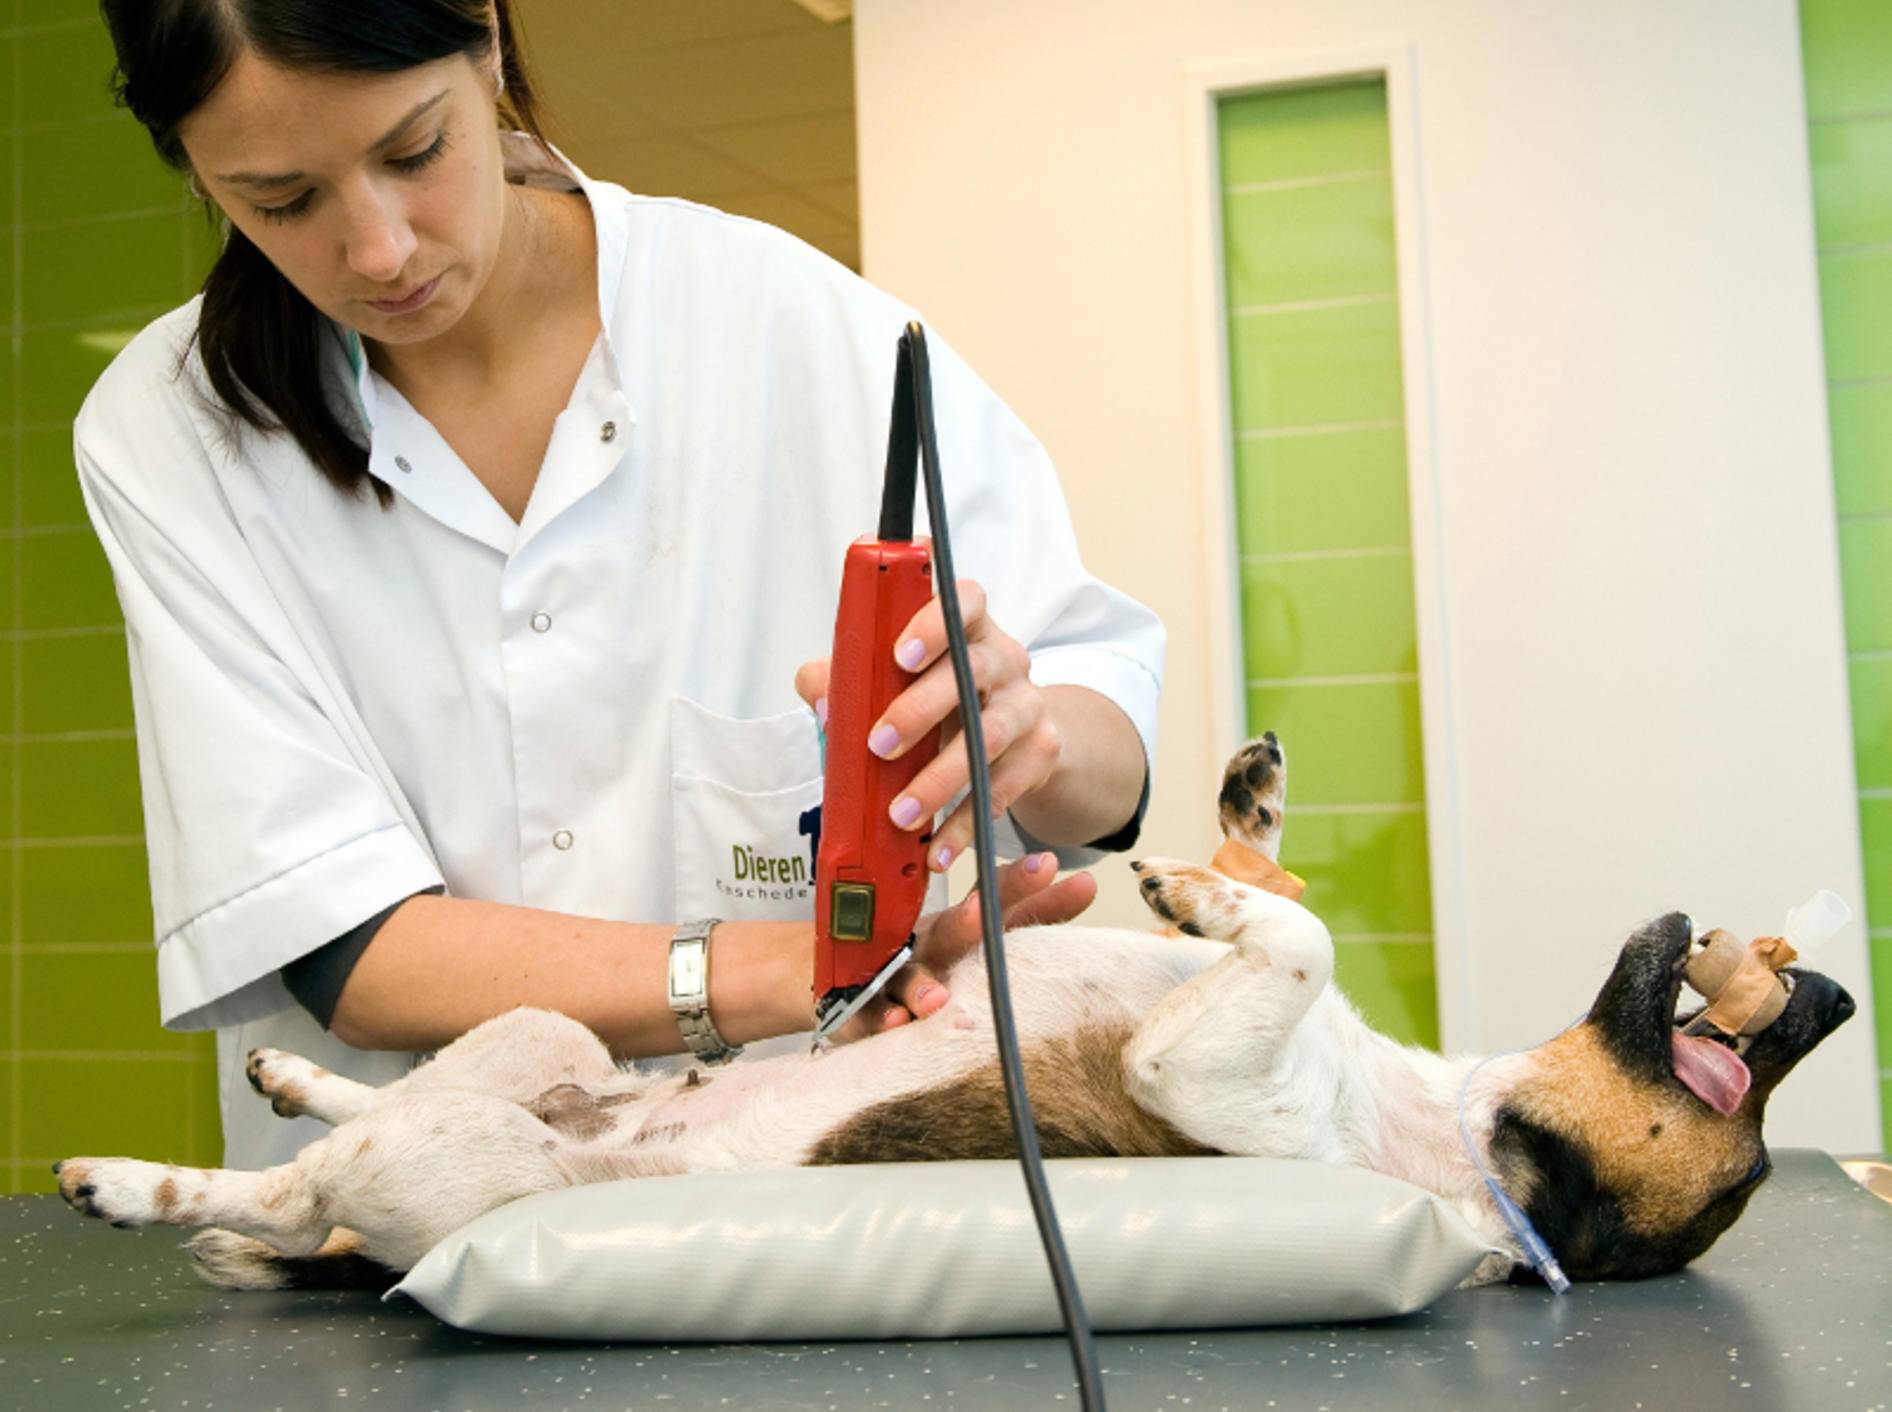 Bei einer Magendrehung muss der Hund meist operiert werden – Bild: Shutterstock / Robert Hoetink